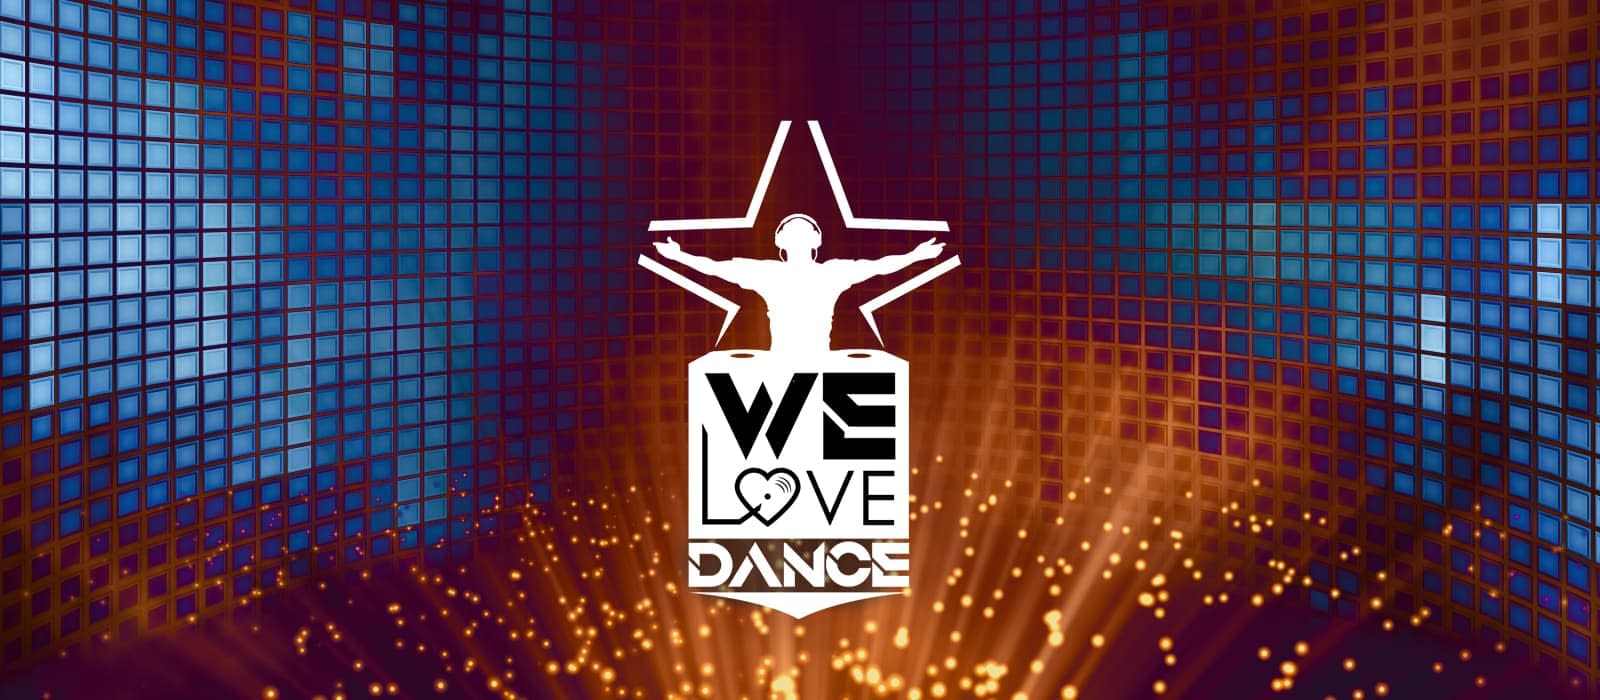 we love dance - programma radio studiopiu sicilia